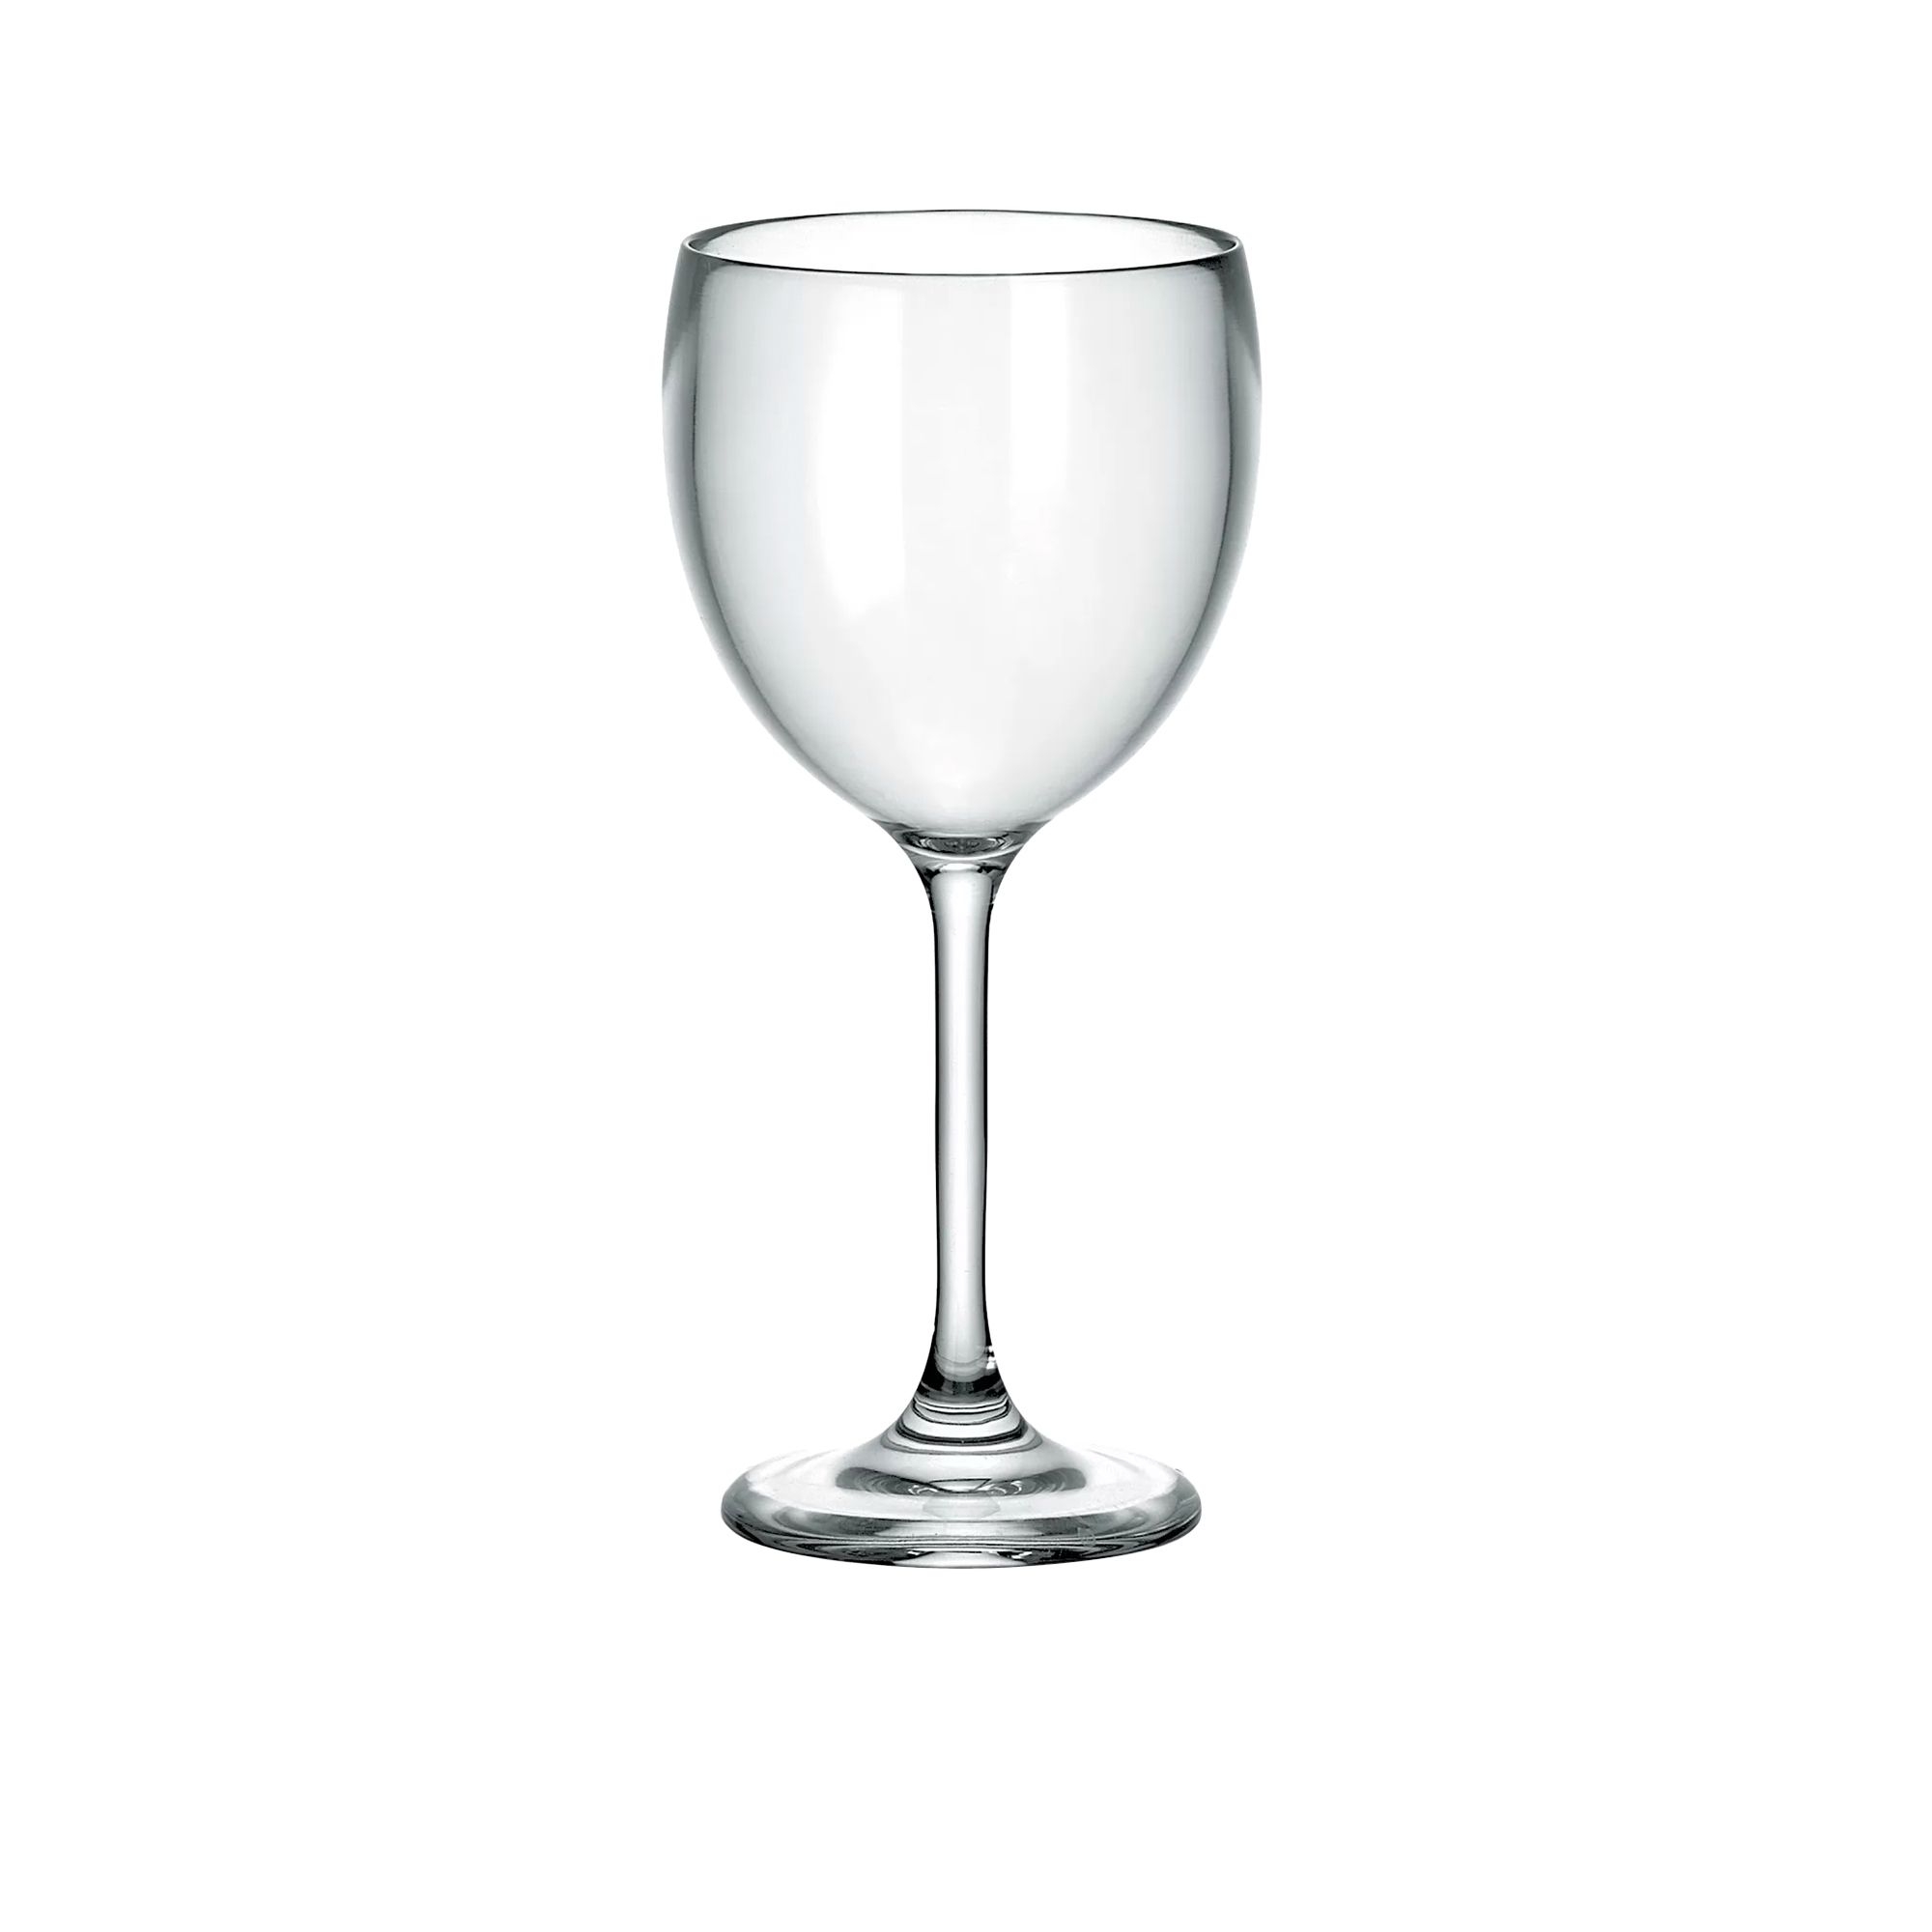 Guzzini Wine Glass 300ml Set of 6 Image 2